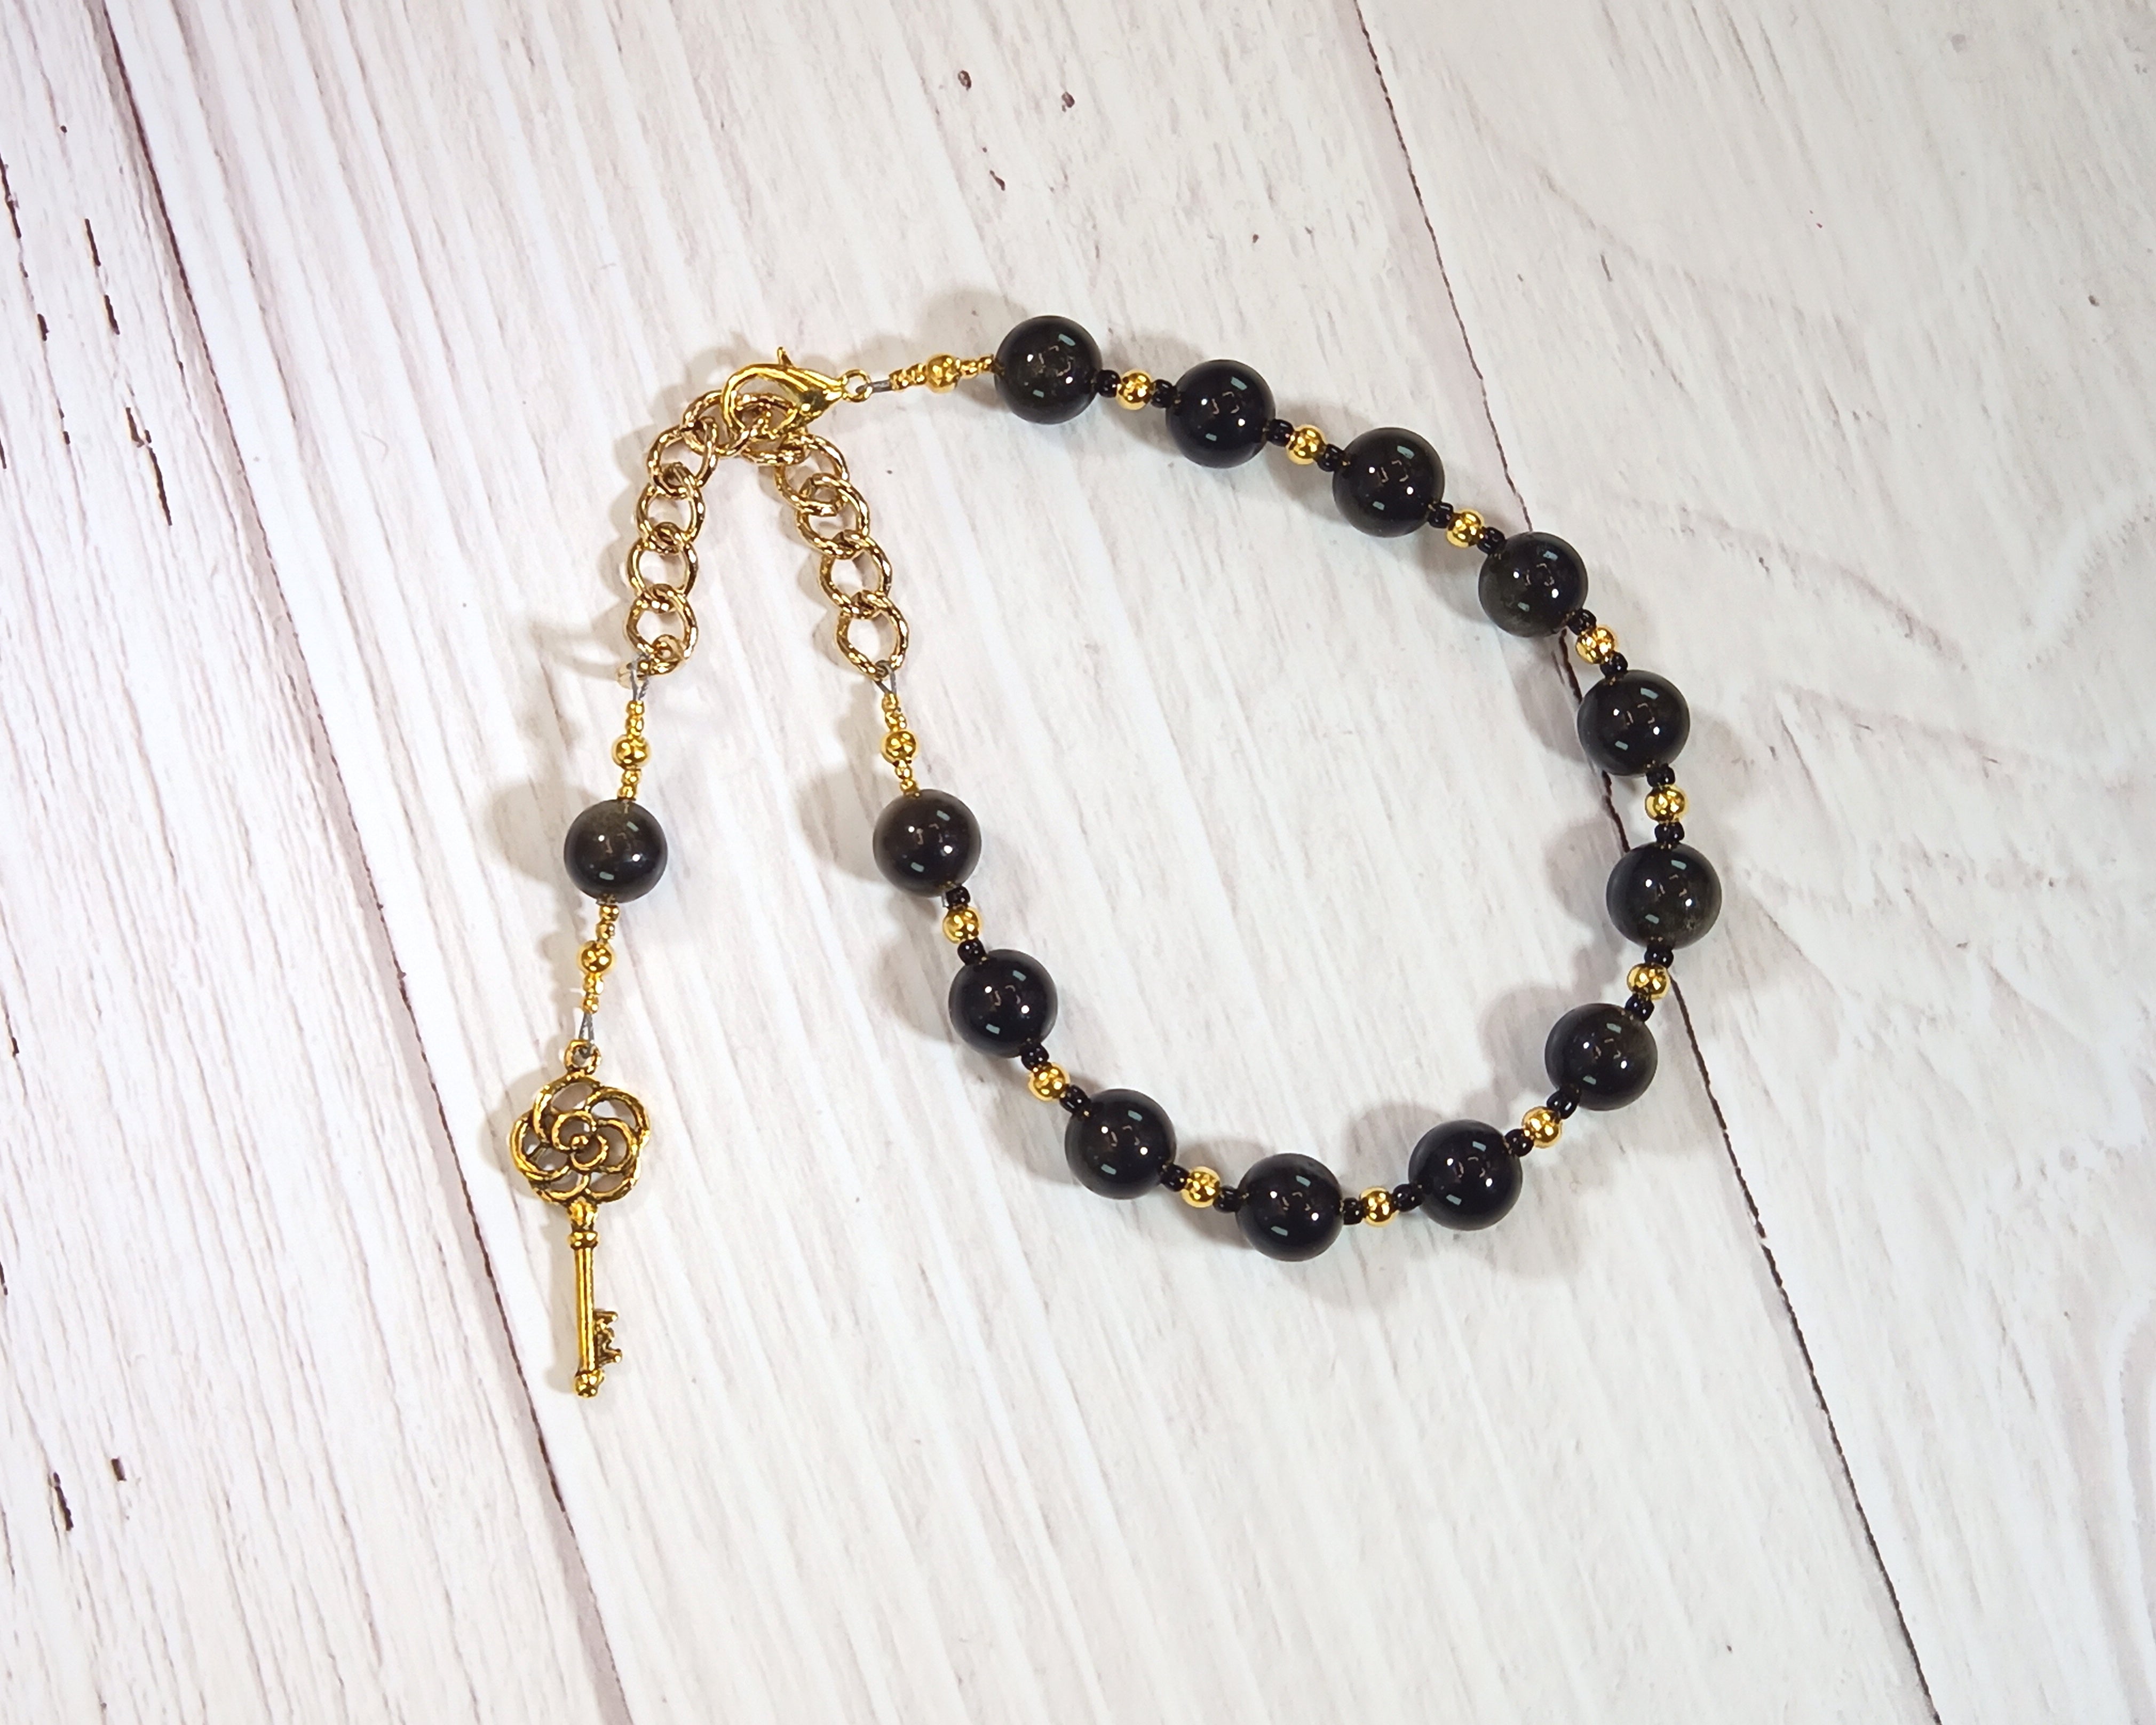 Hekate Prayer Bead Bracelet in Golden Obsidian: Greek Goddess of